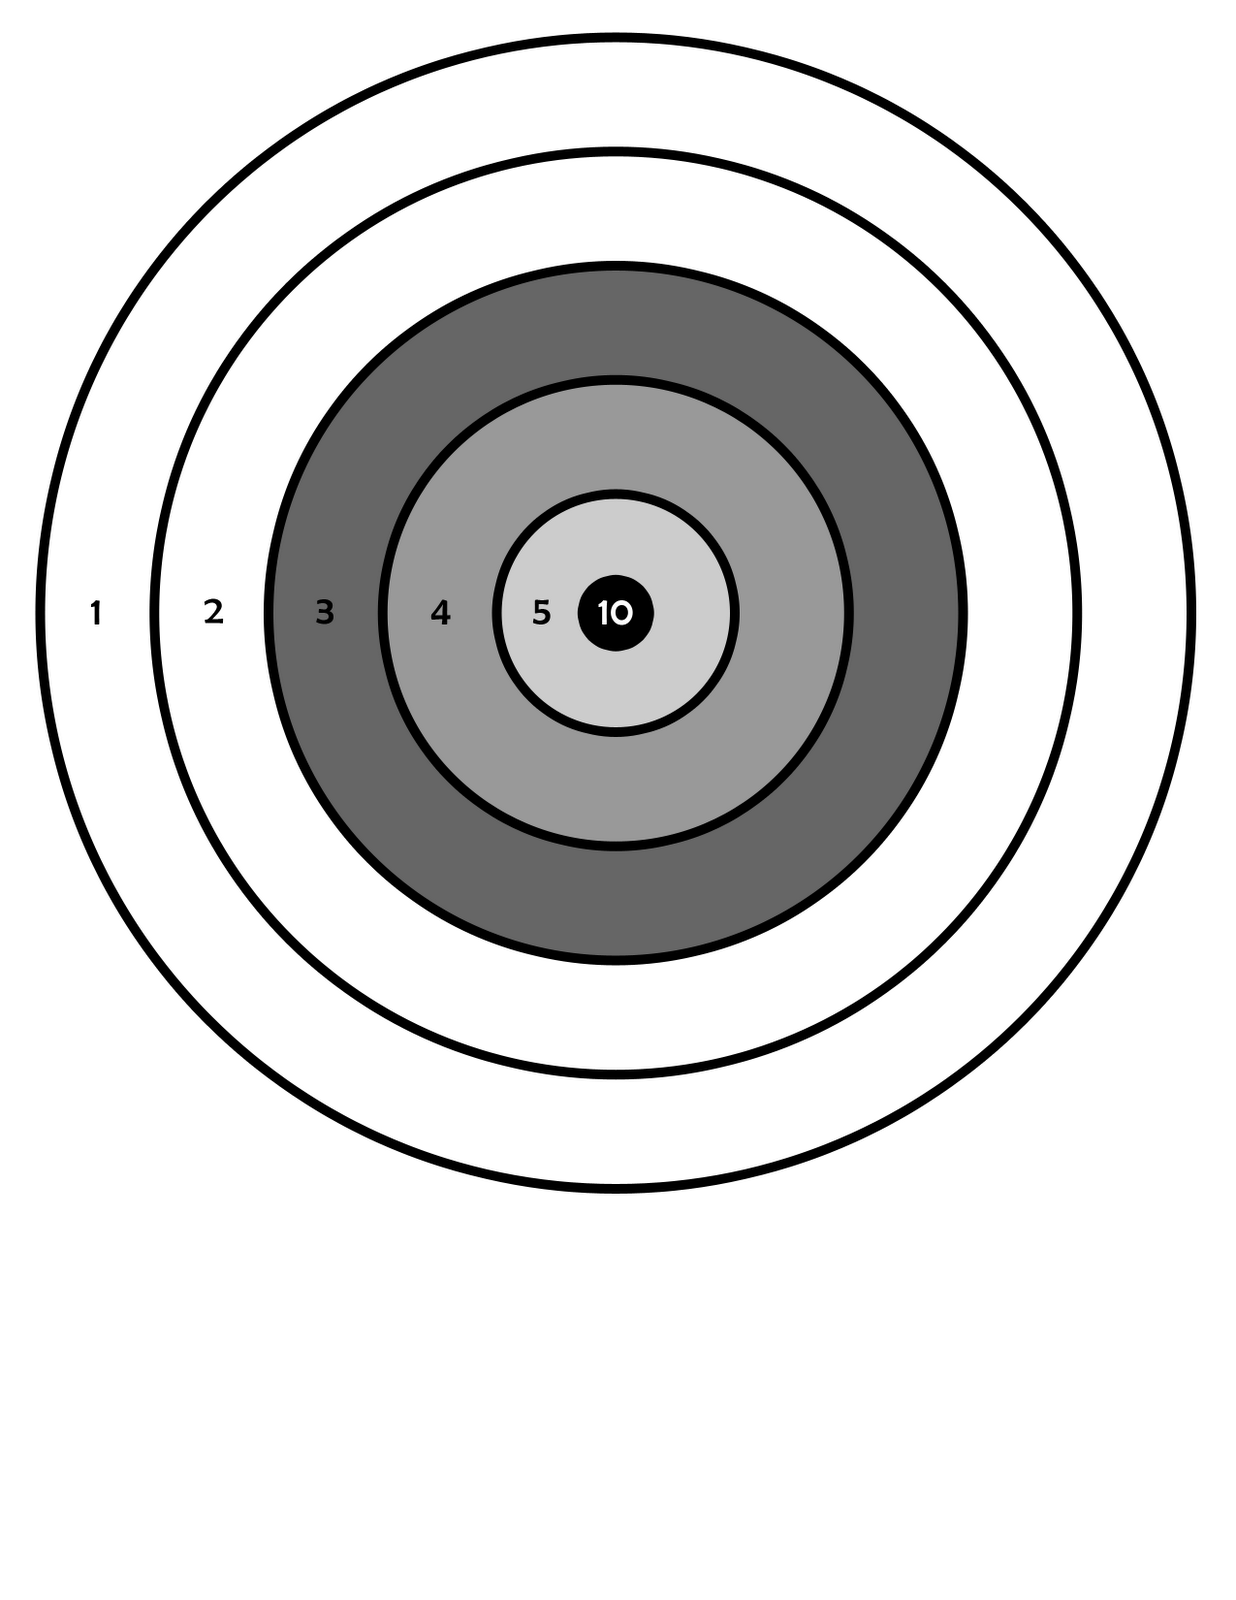 Printable Bb Gun Target